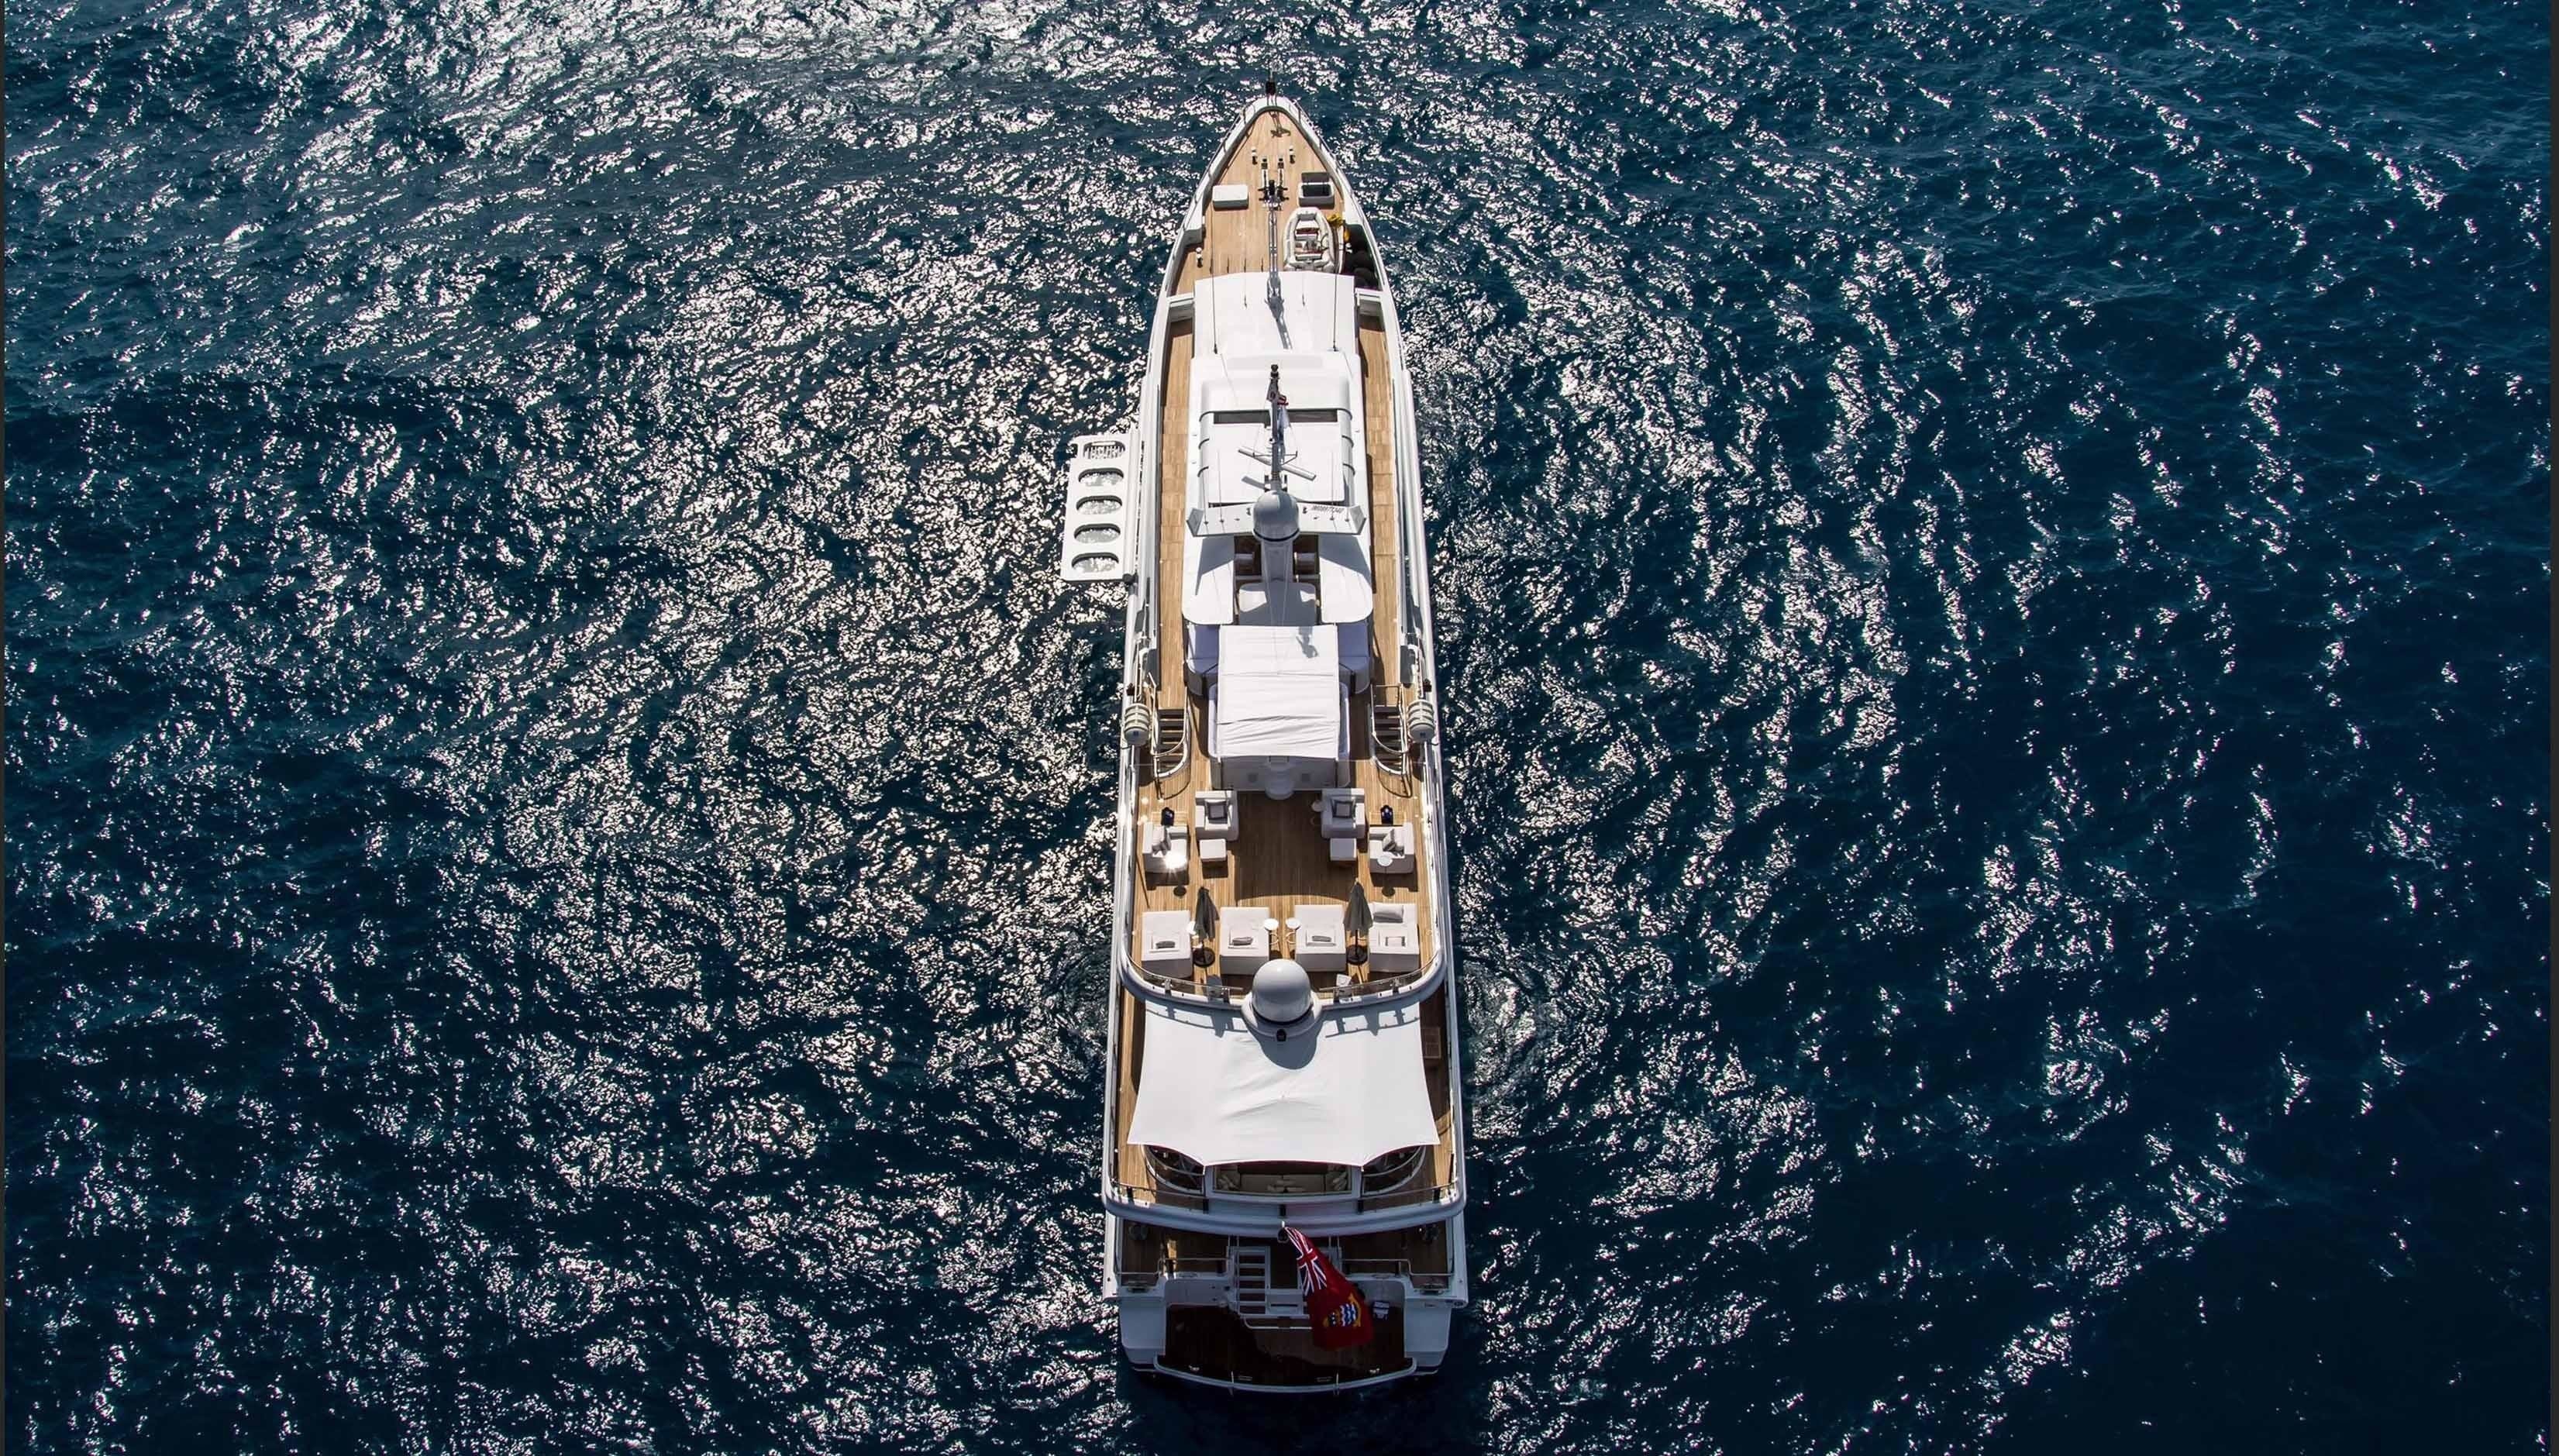 The 55m Yacht OCEANA